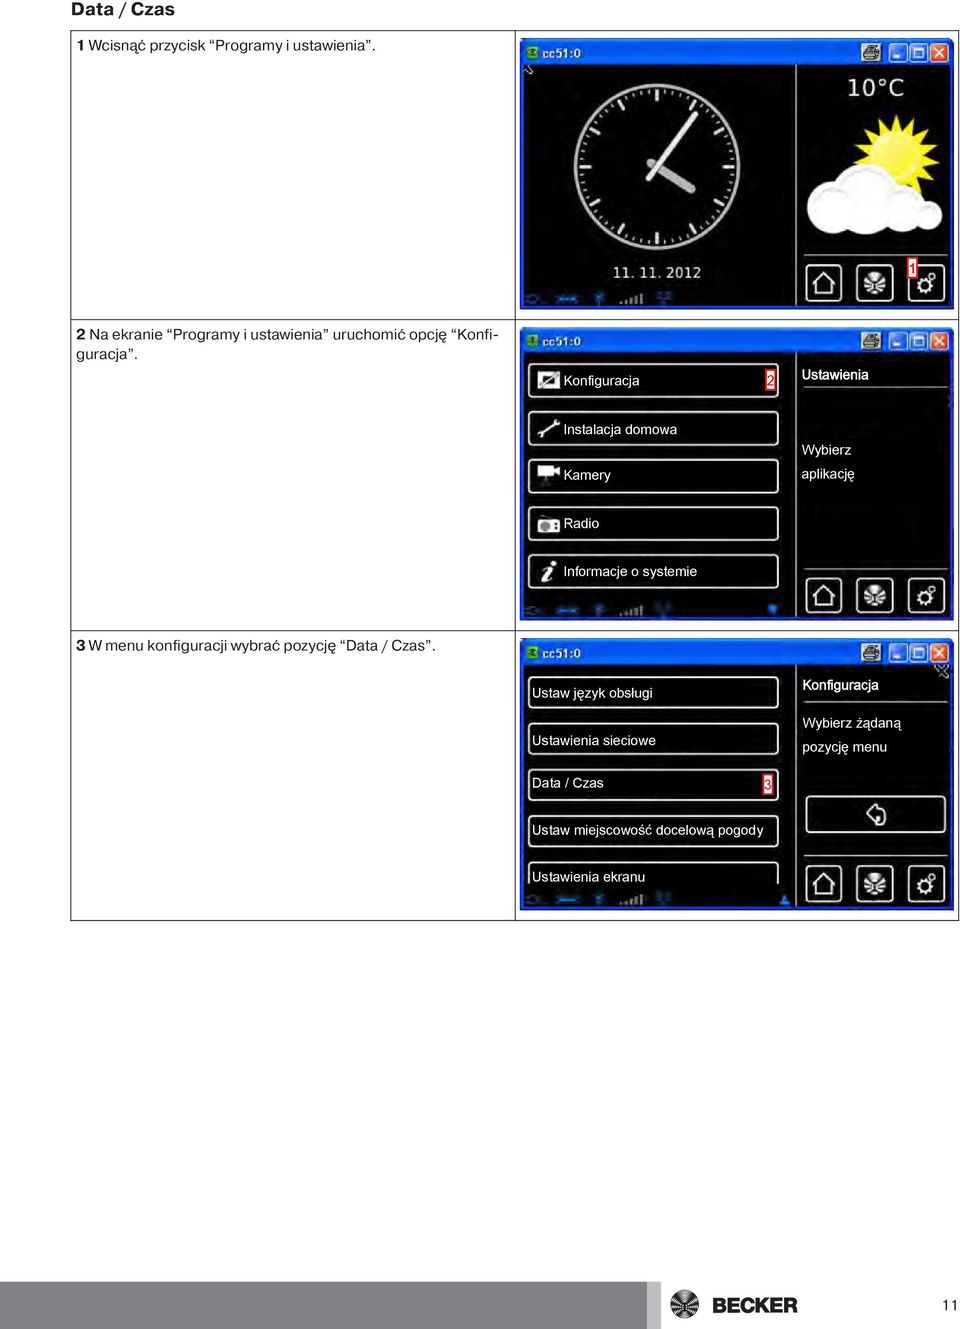 2 Ustawienia Instalacja domowa Kamery aplikację Radio Informacje o systemie 3 W menu